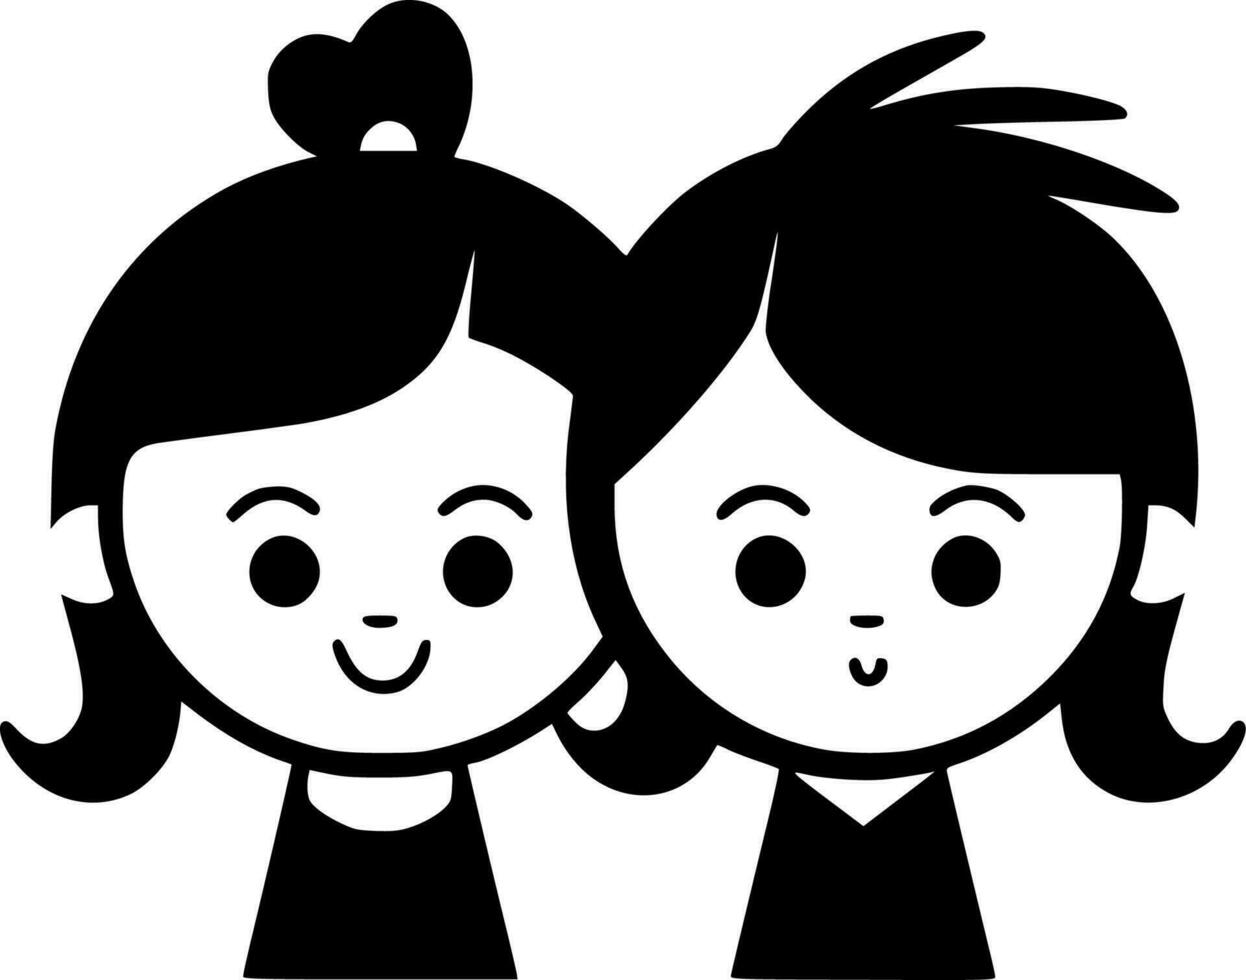 Kinder - - schwarz und Weiß isoliert Symbol - - Vektor Illustration